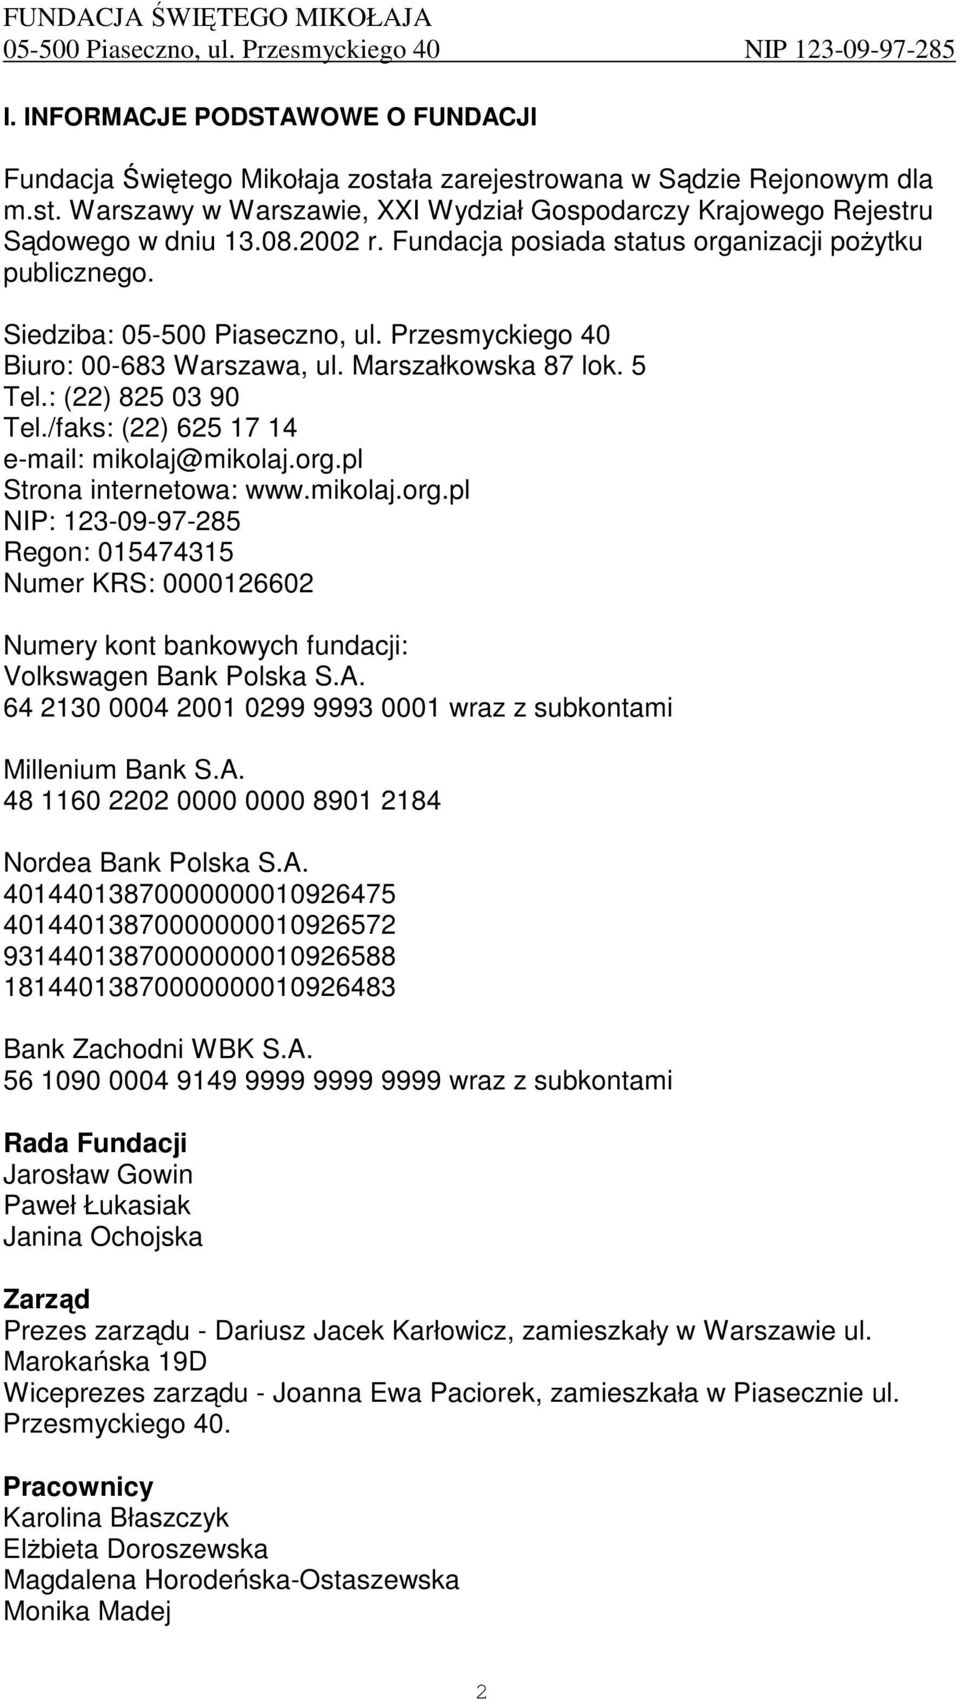 /faks: (22) 625 17 14 e-mail: mikolaj@mikolaj.org.pl Strona internetowa: www.mikolaj.org.pl NIP: 123-09-97-285 Regon: 015474315 Numer KRS: 0000126602 Numery kont bankowych fundacji: Volkswagen Bank Polska S.